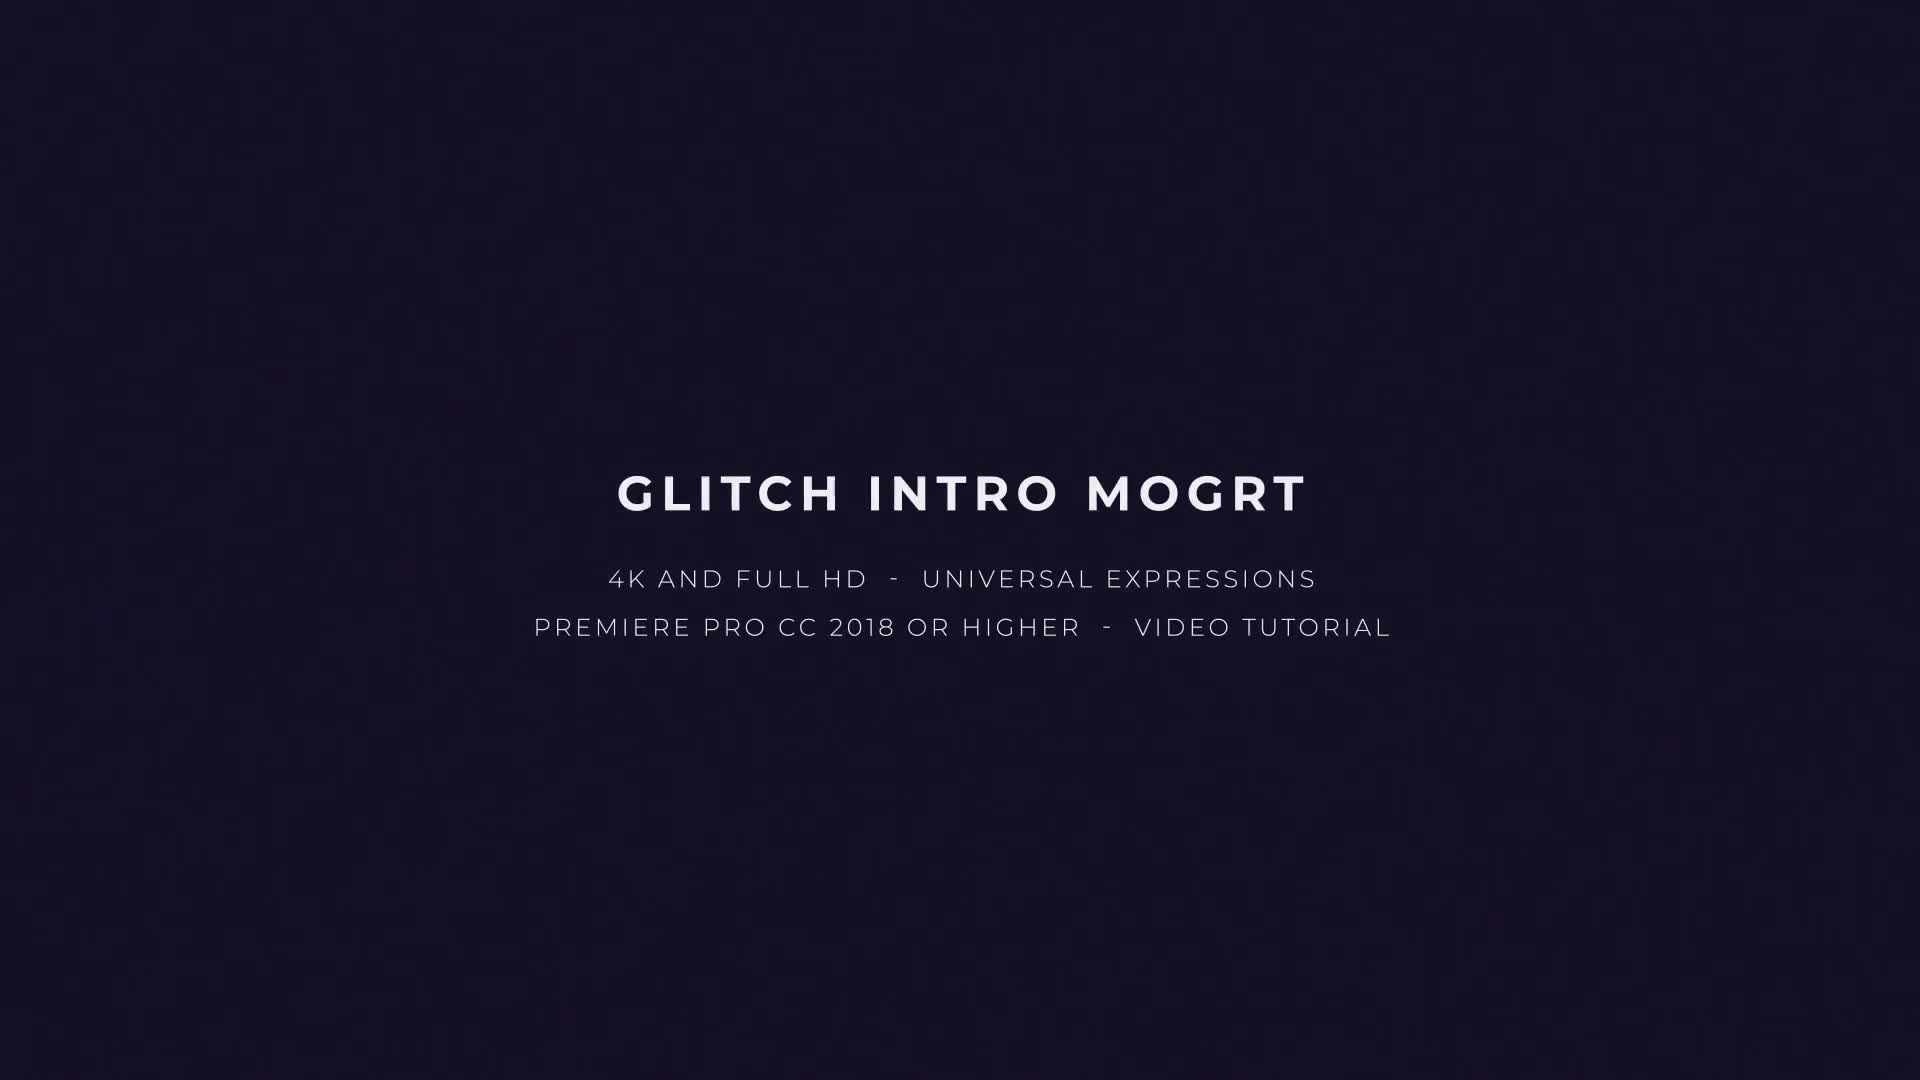 Glitch Intro Mogrt Videohive 22698598 Premiere Pro Image 1